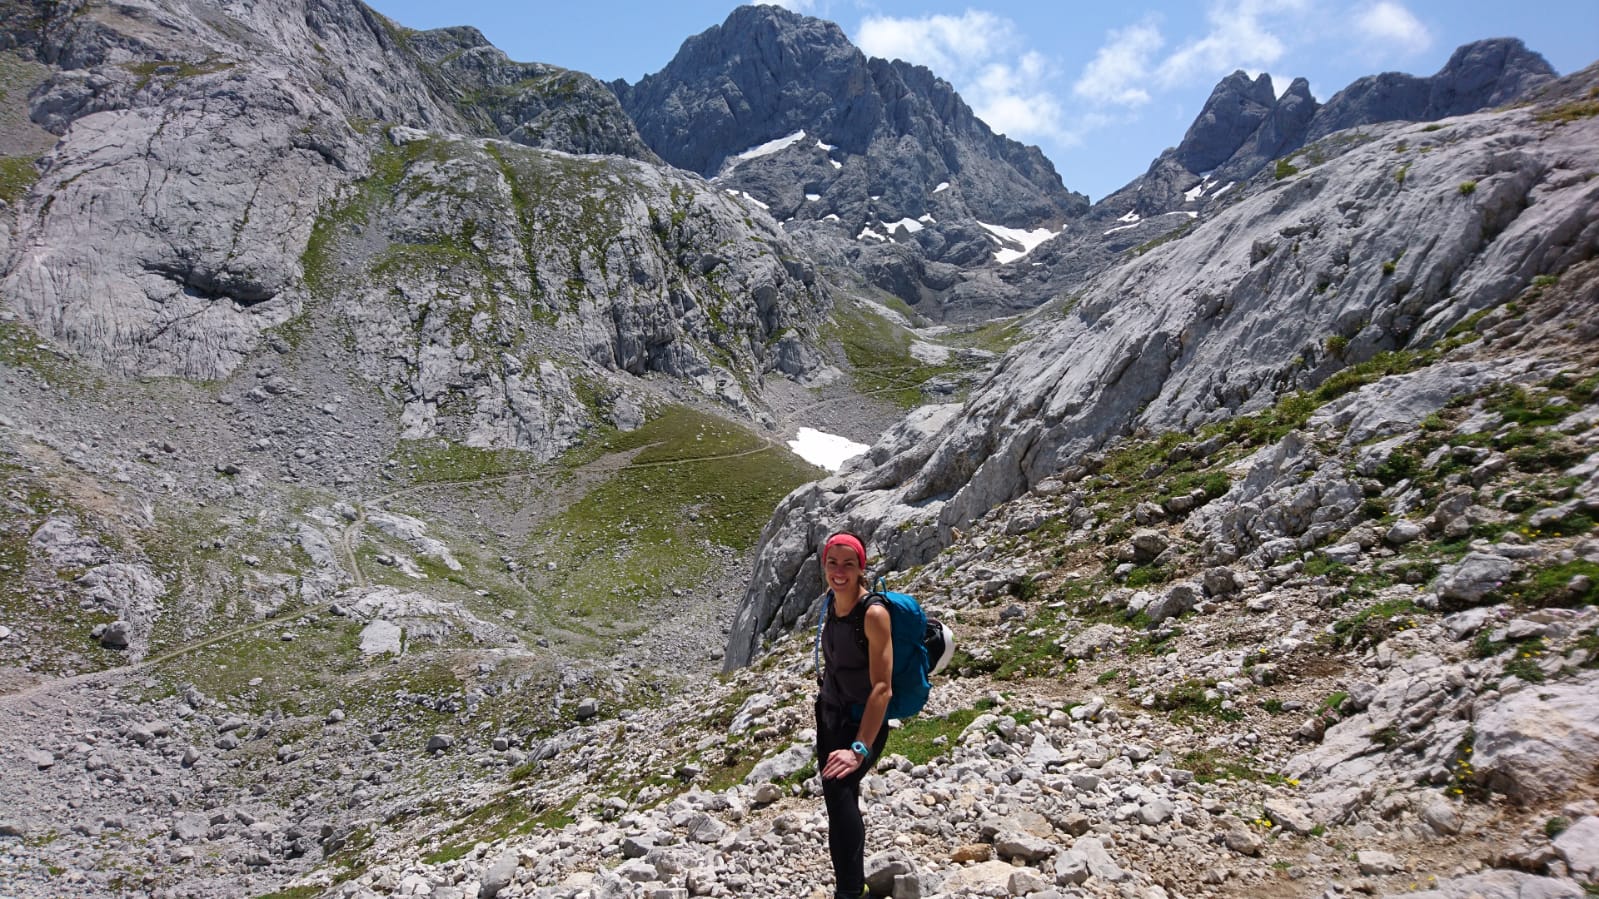 Noelia aparece en primer plano durante una jornada de senderismo en el Parque Nacional de los Picos de Europa. Va vestida con pantalón y camiseta de color negro, una cinta roja en su pelo y mochila en la espalda. Tras ella un impresionante paisaje de Picos, con roca, nieve y vegetación verde.